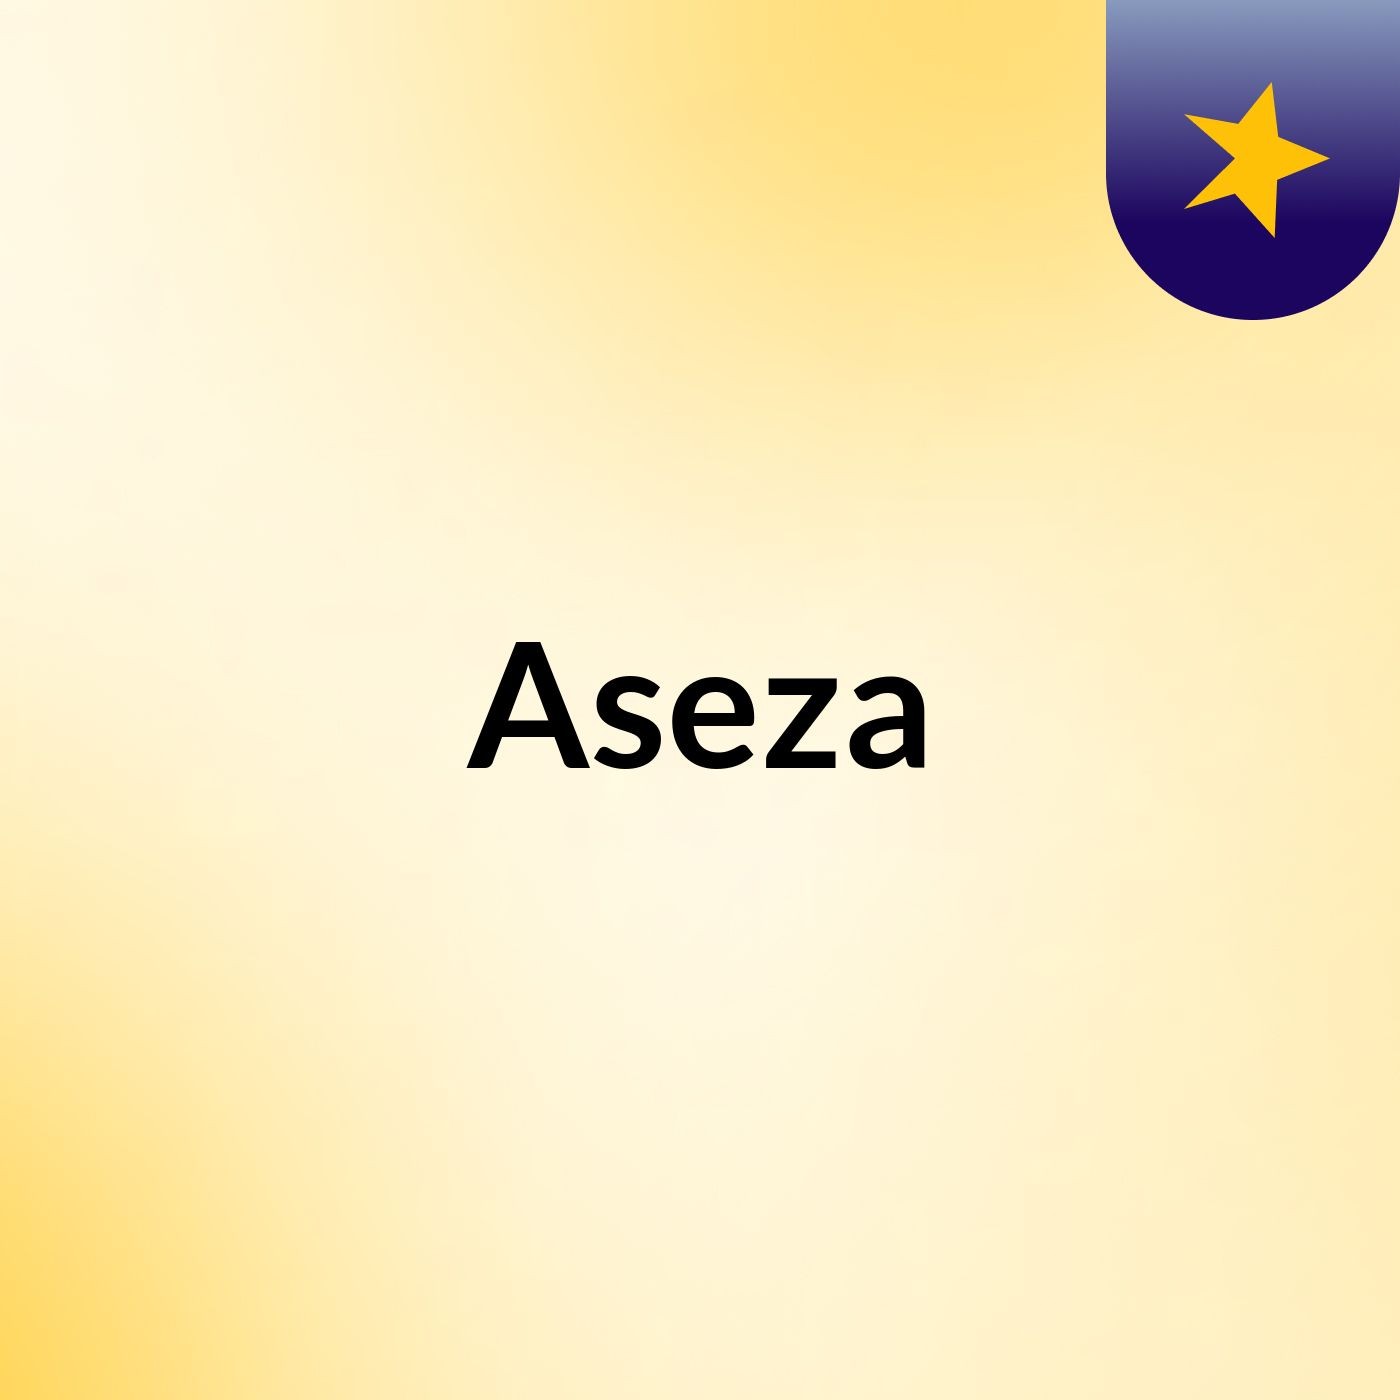 Aseza